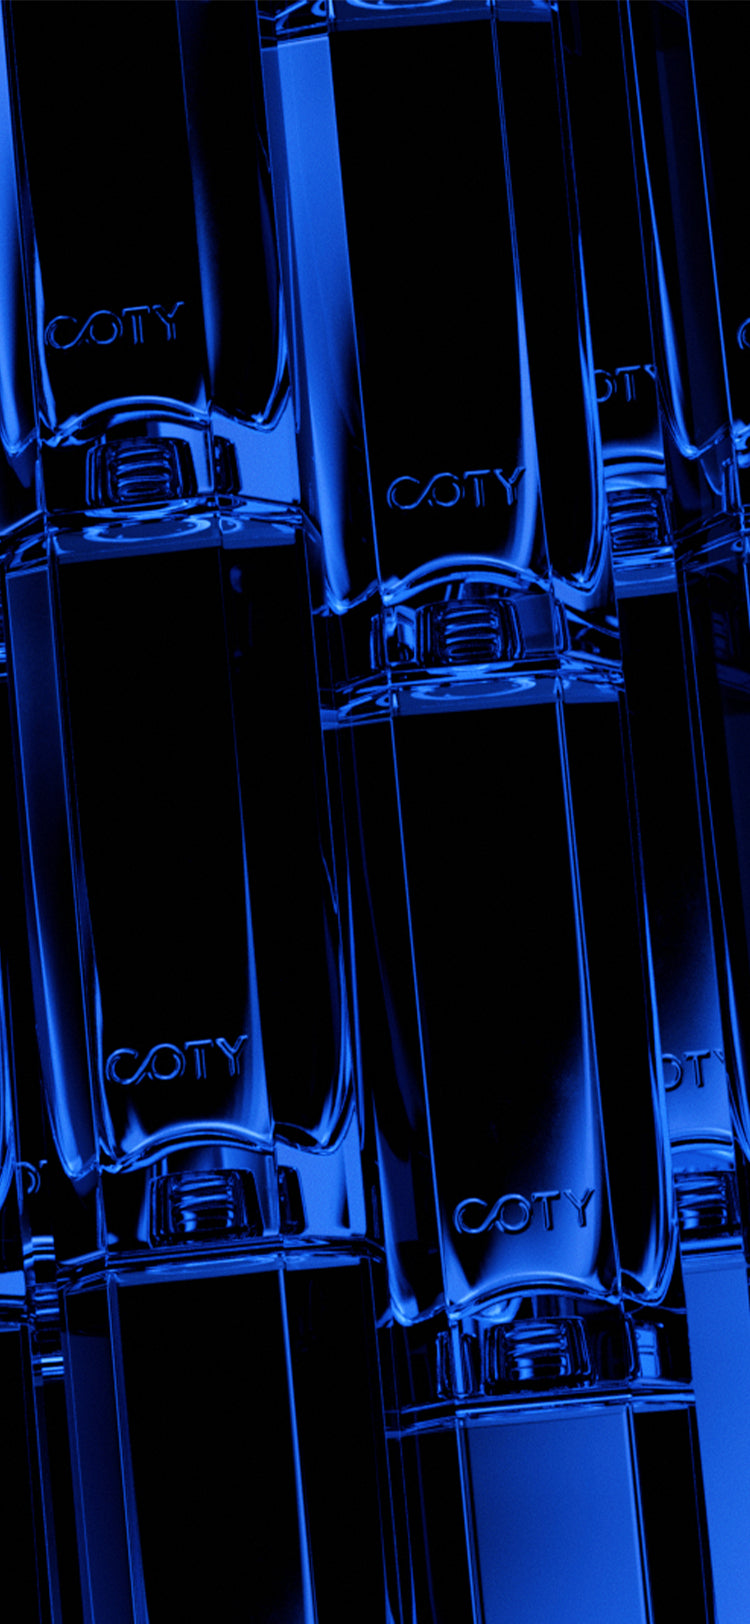 Infiniment Coty Paris stackable bottles